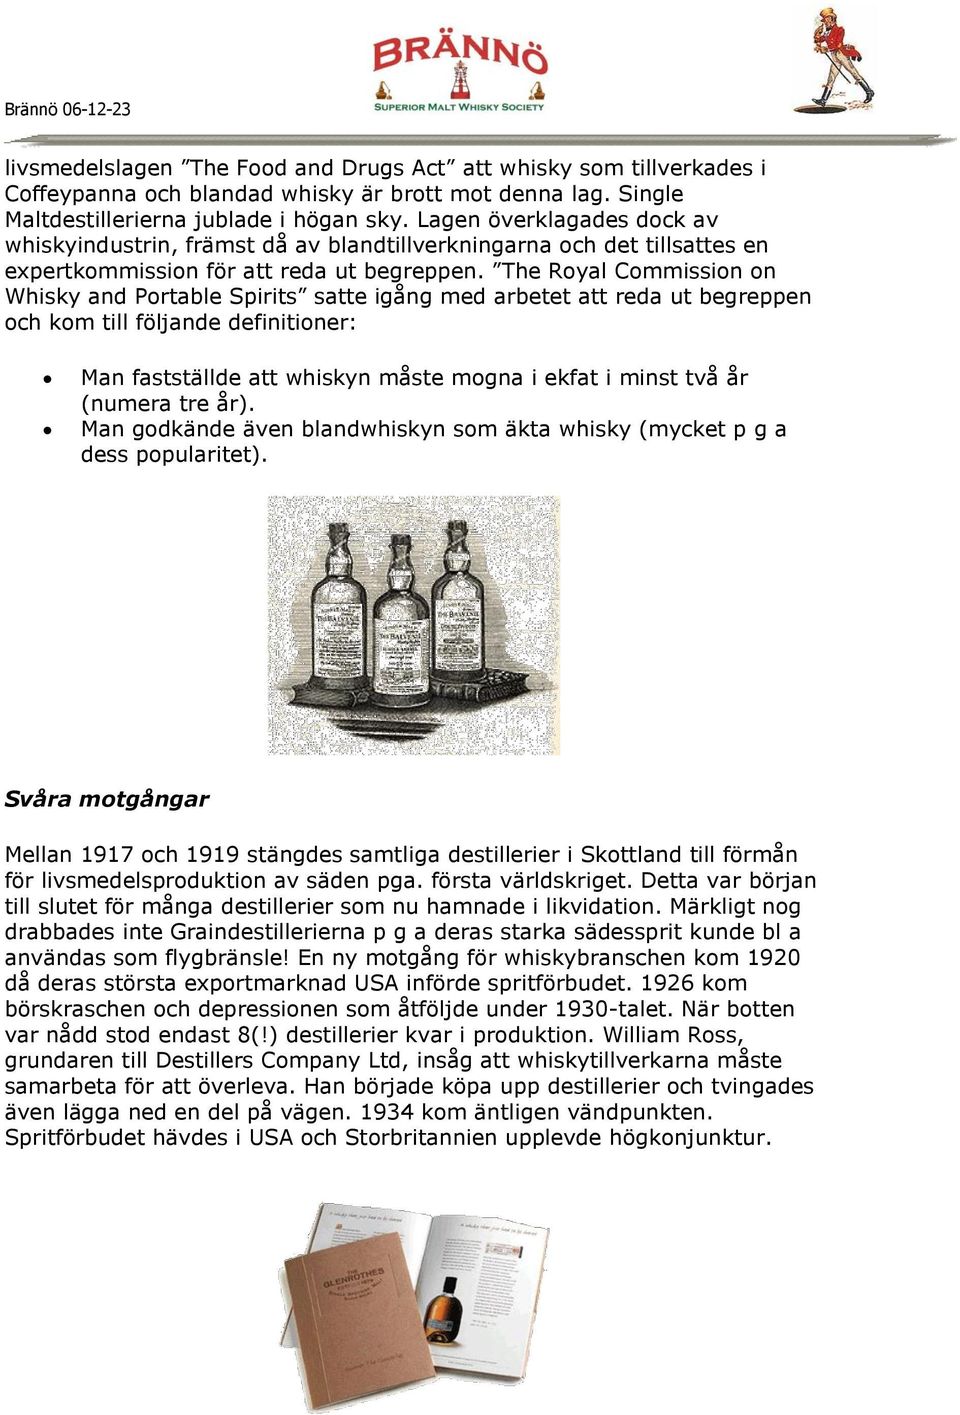 The Royal Commission on Whisky and Portable Spirits satte igång med arbetet att reda ut begreppen och kom till följande definitioner: Man fastställde att whiskyn måste mogna i ekfat i minst två år